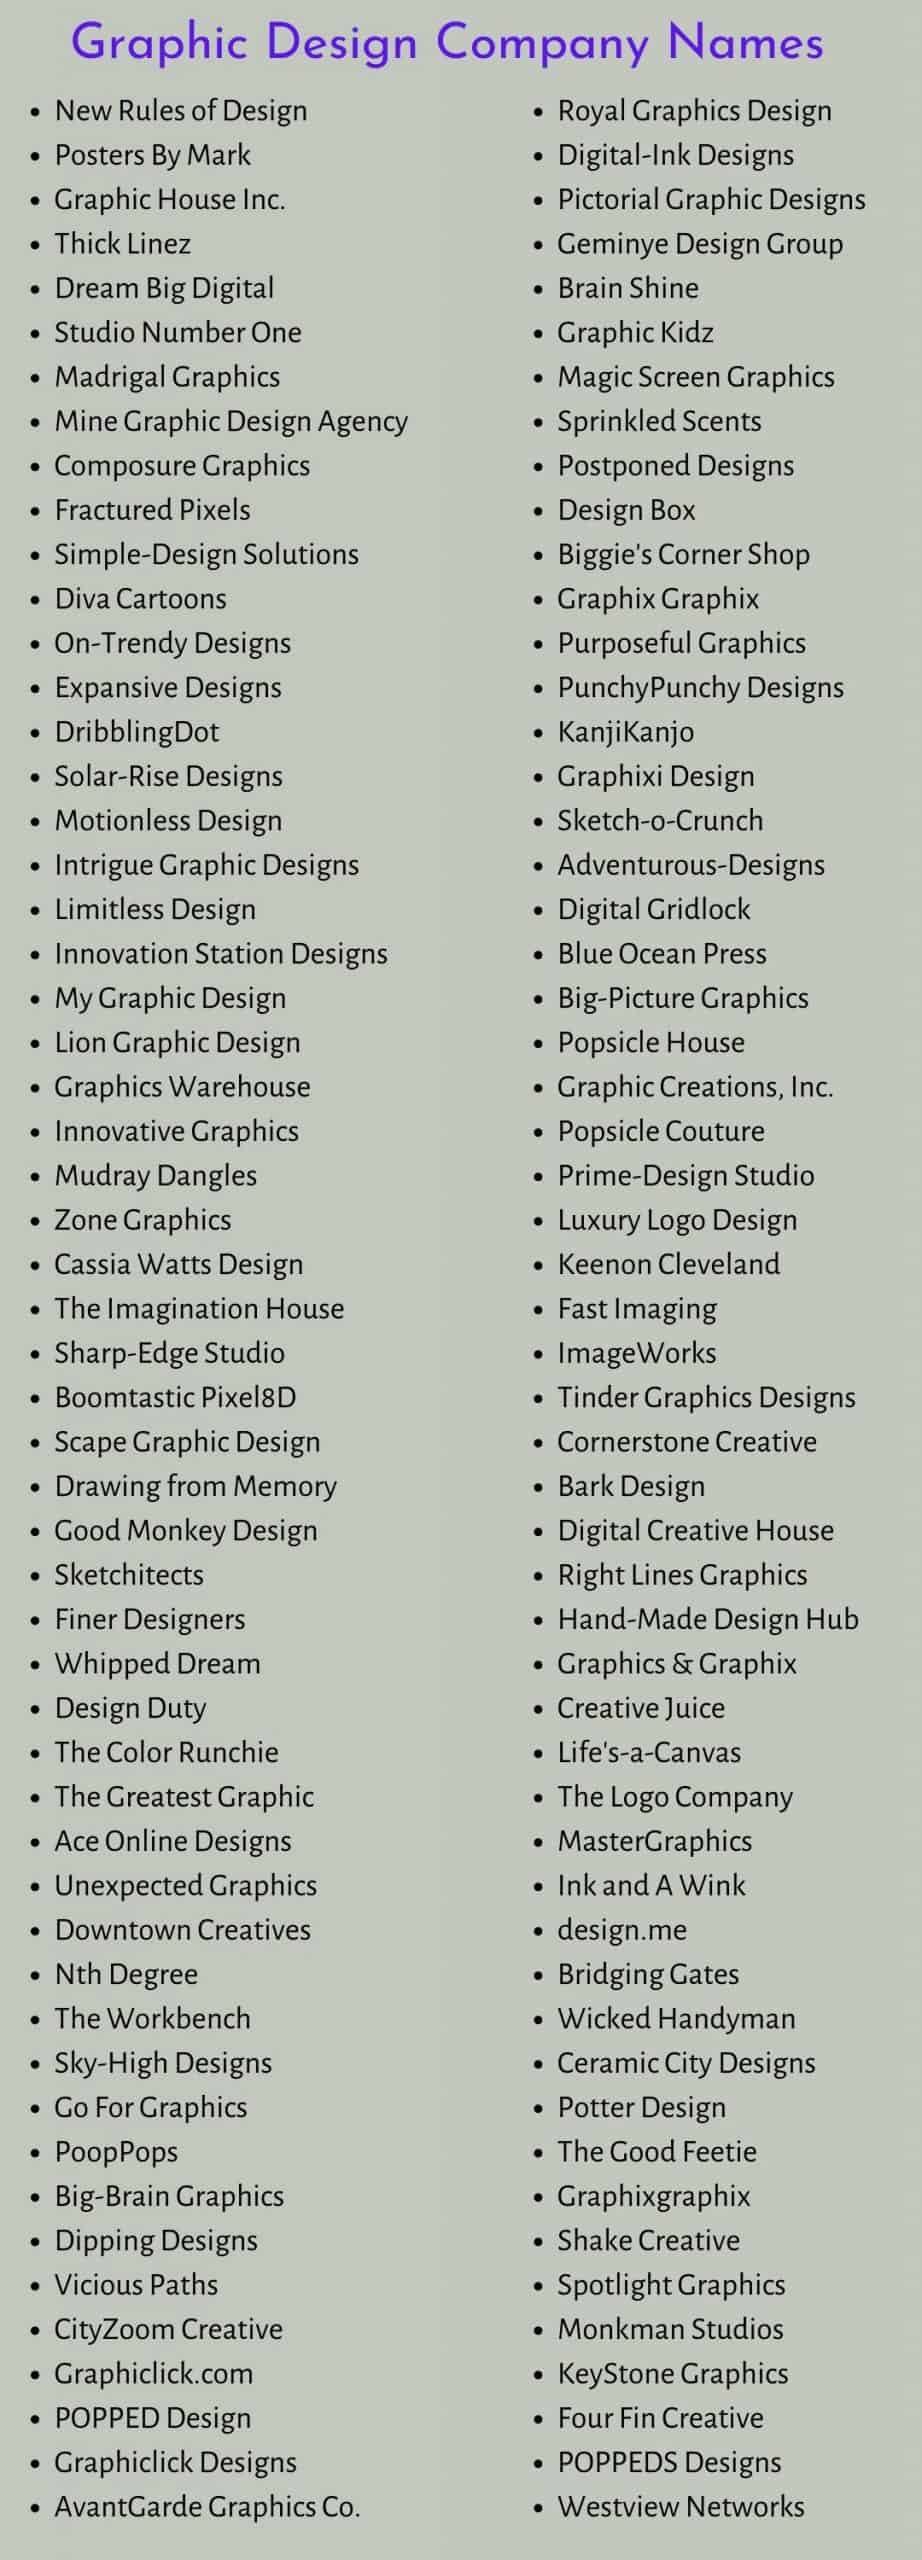 Graphic Design Company Names